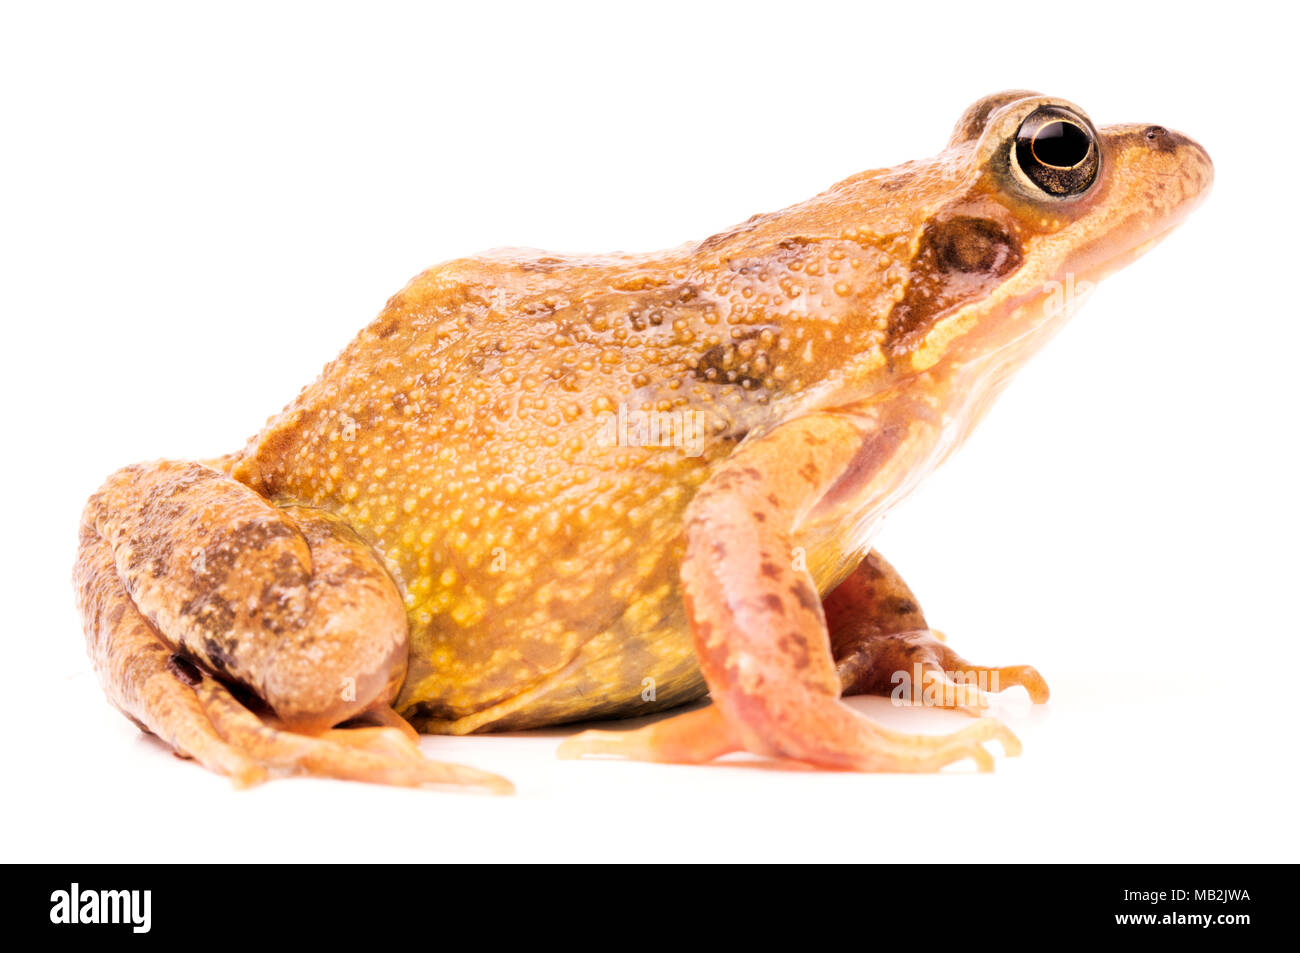 L'herbe brune commun européen, la grenouille Rana temporaria. Accouplement femelle avec des couleurs. Banque D'Images